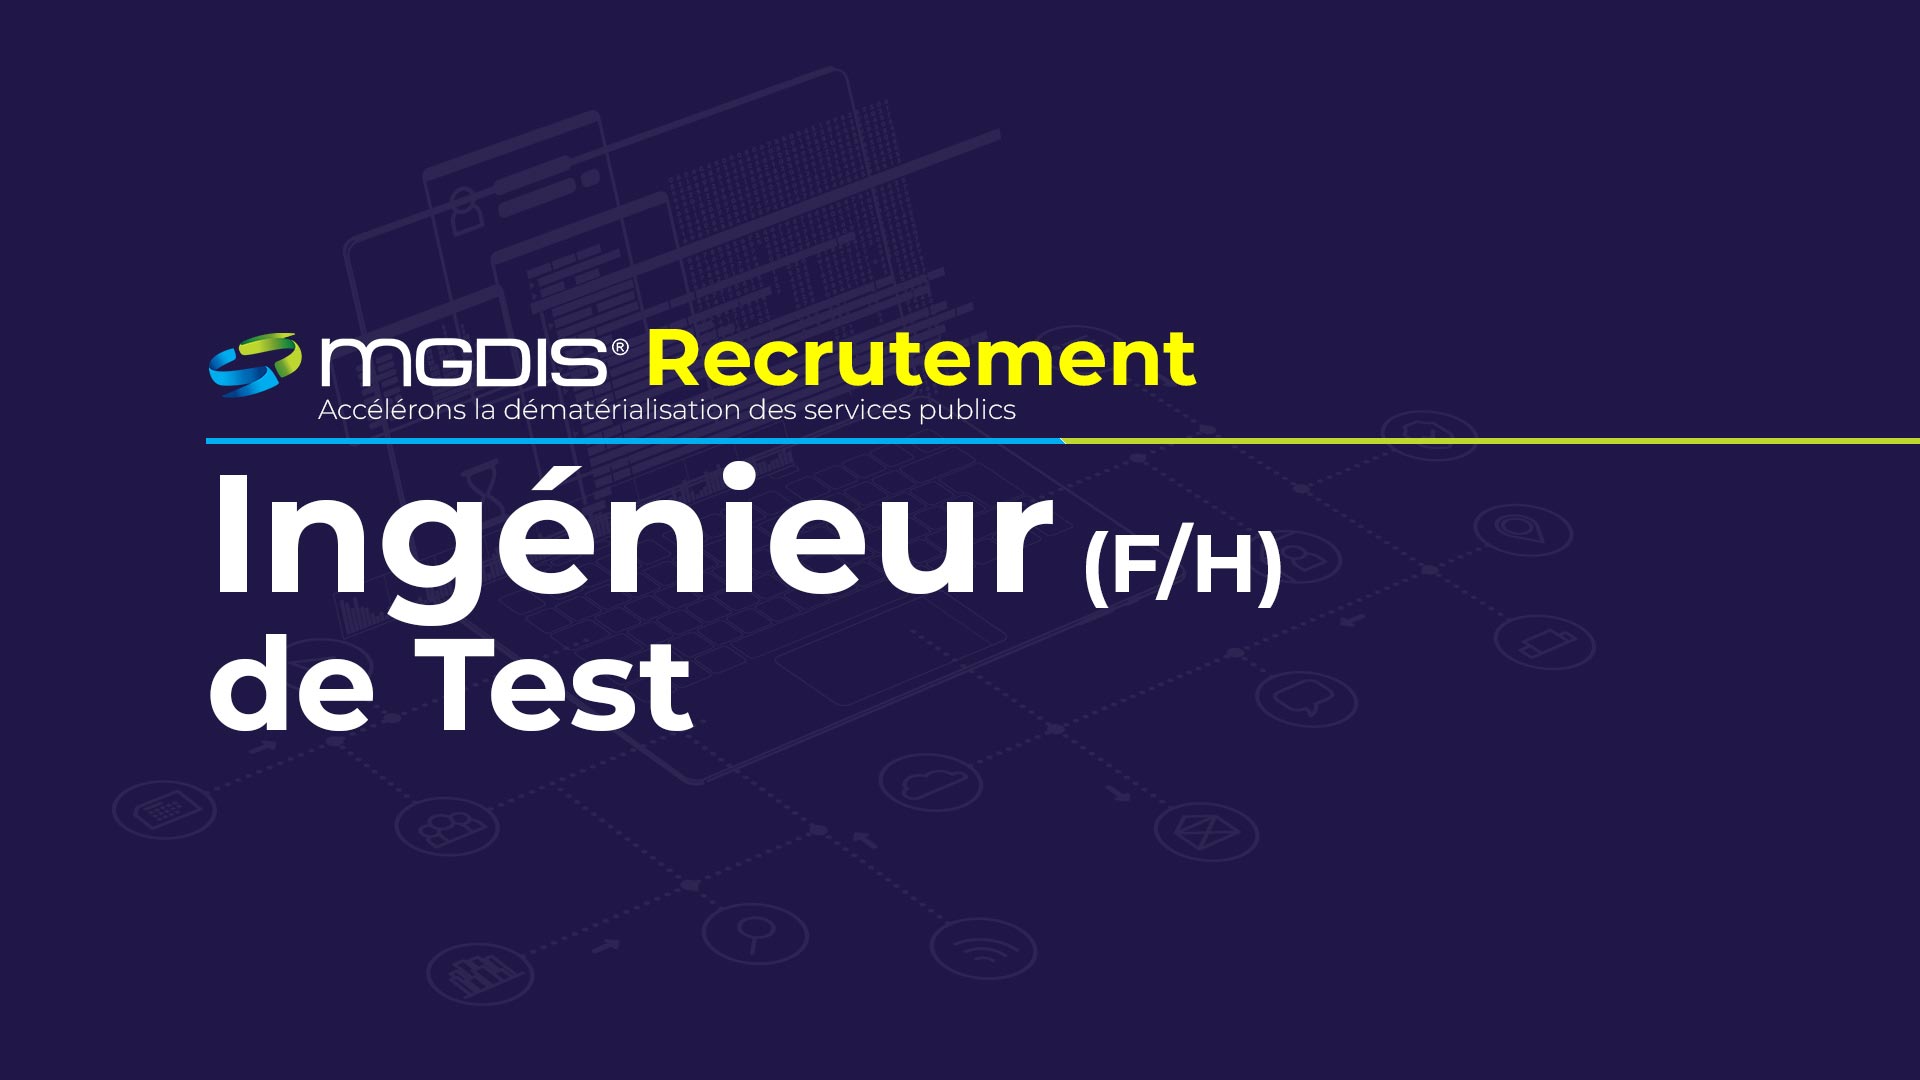 Recrutement: Ingénieur de test (F/H) chez MGDIS à Vannes